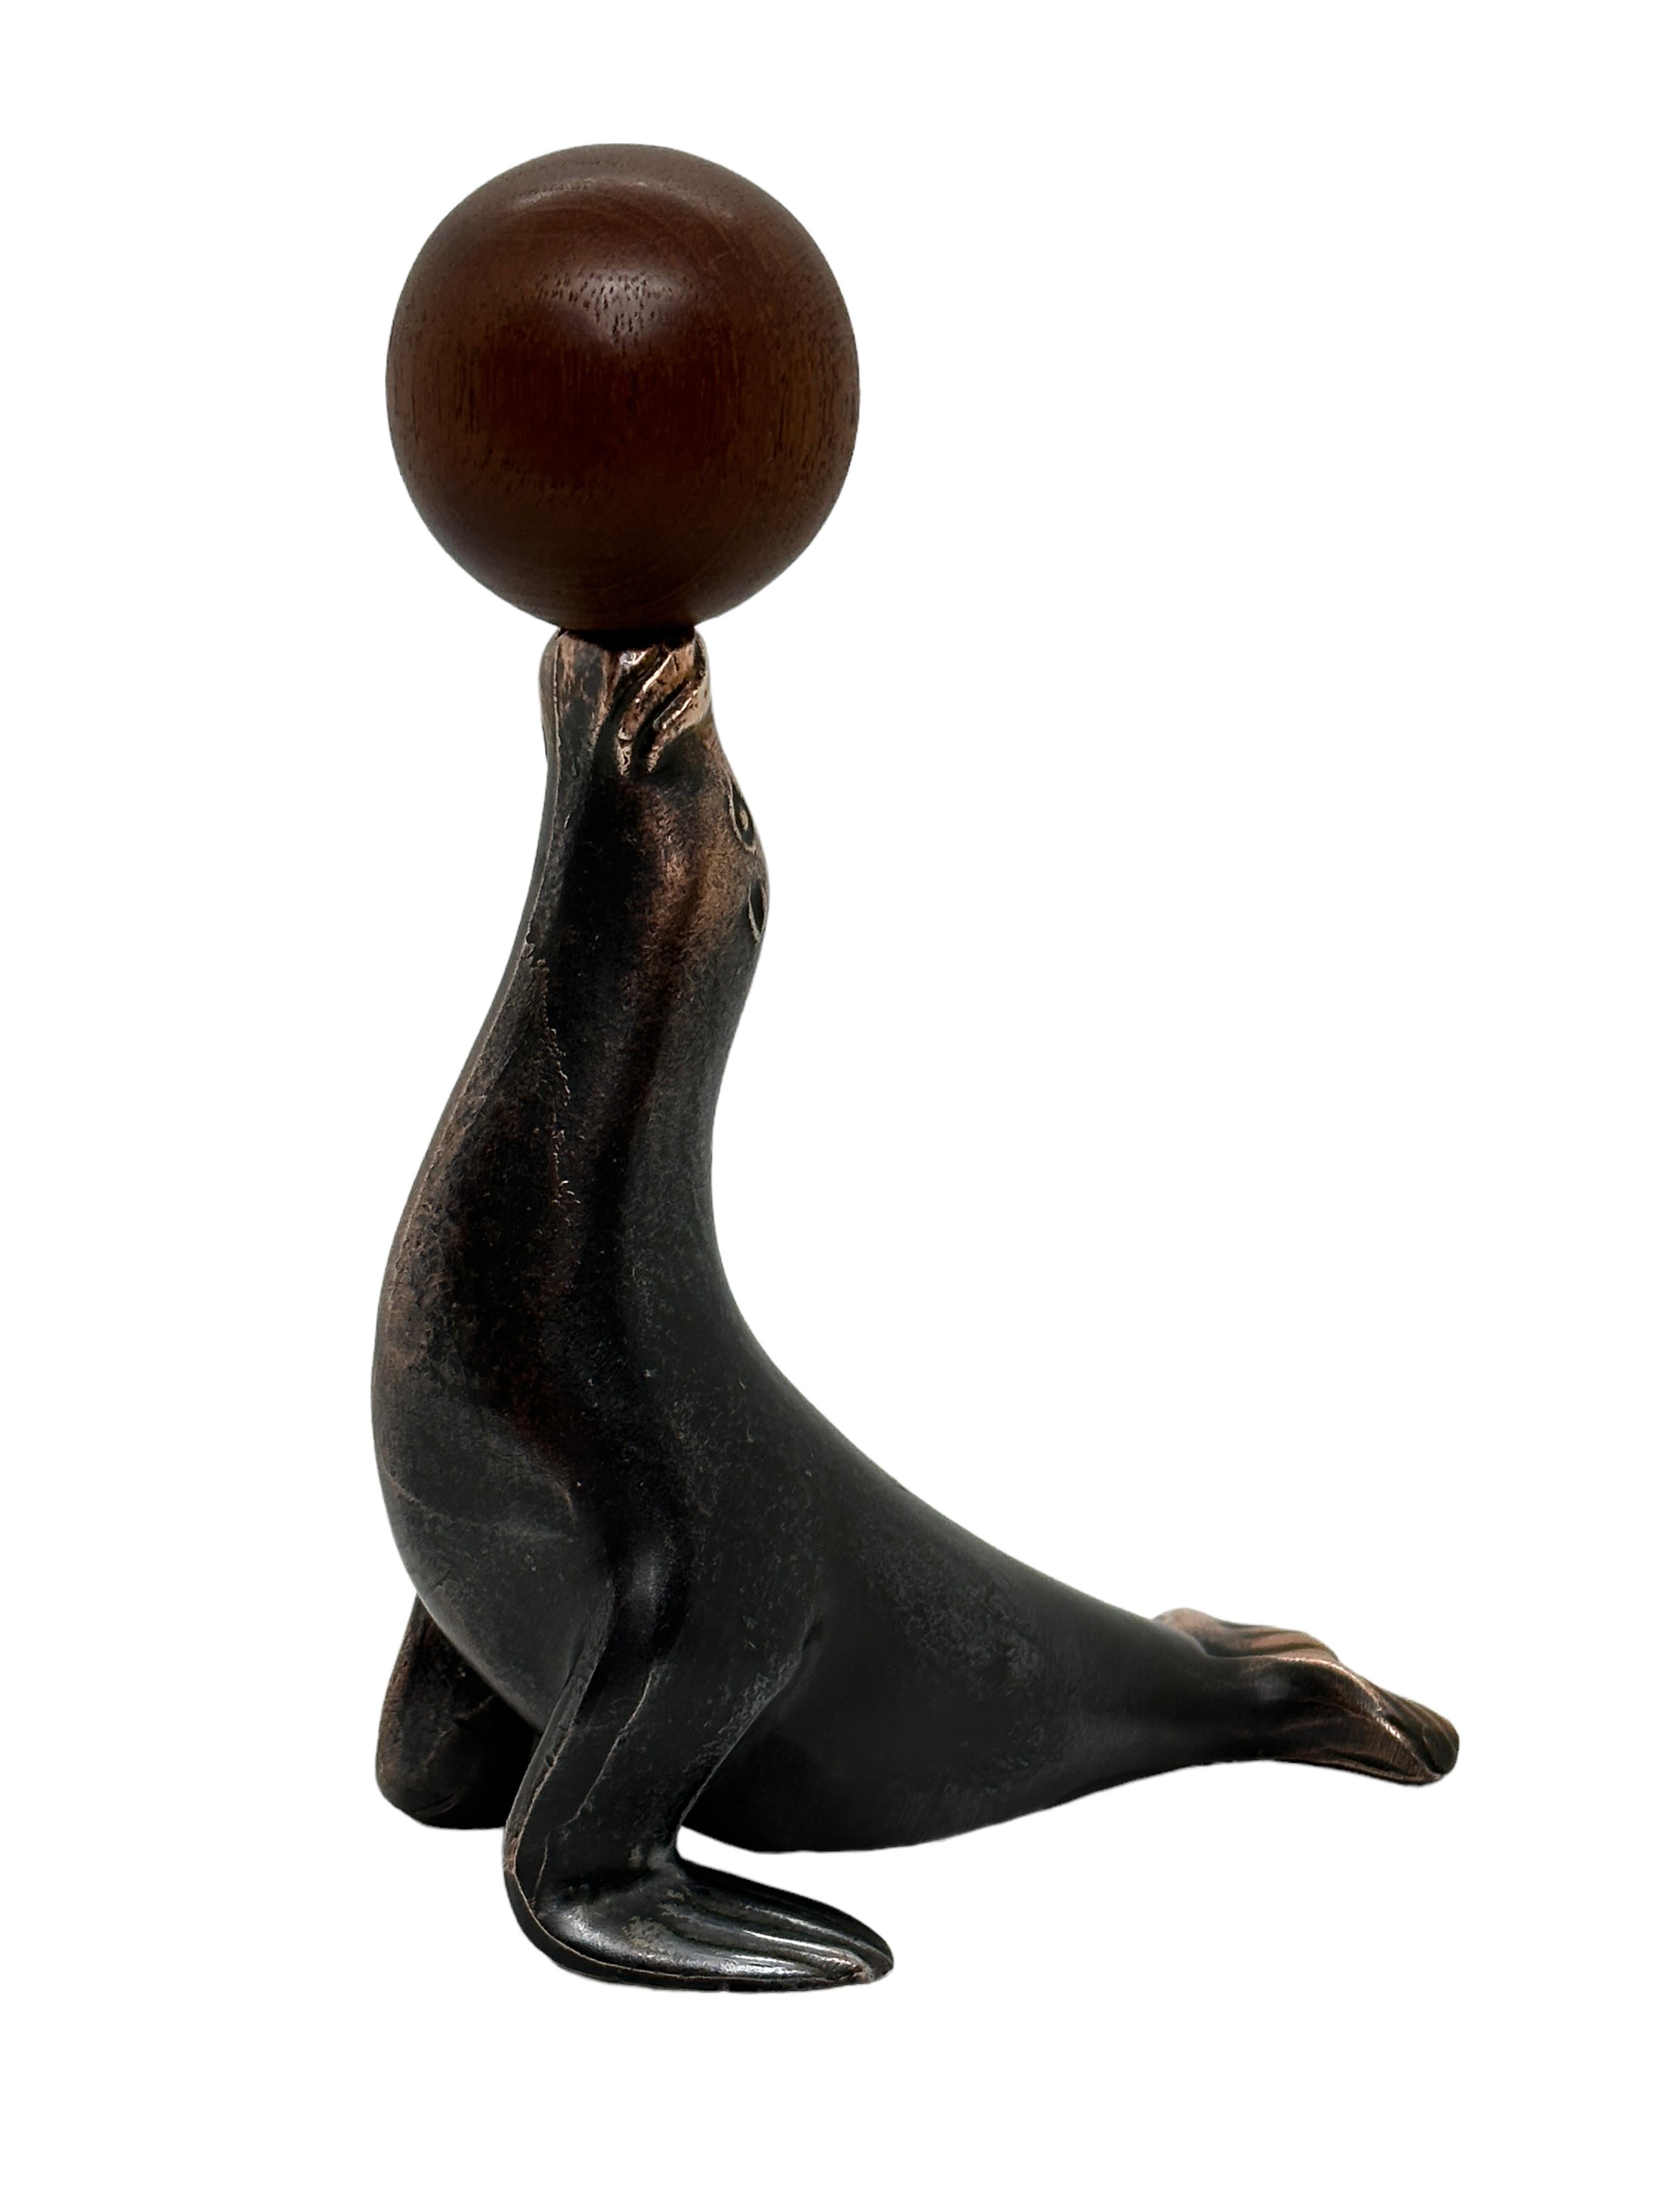 sea lion balancing ball